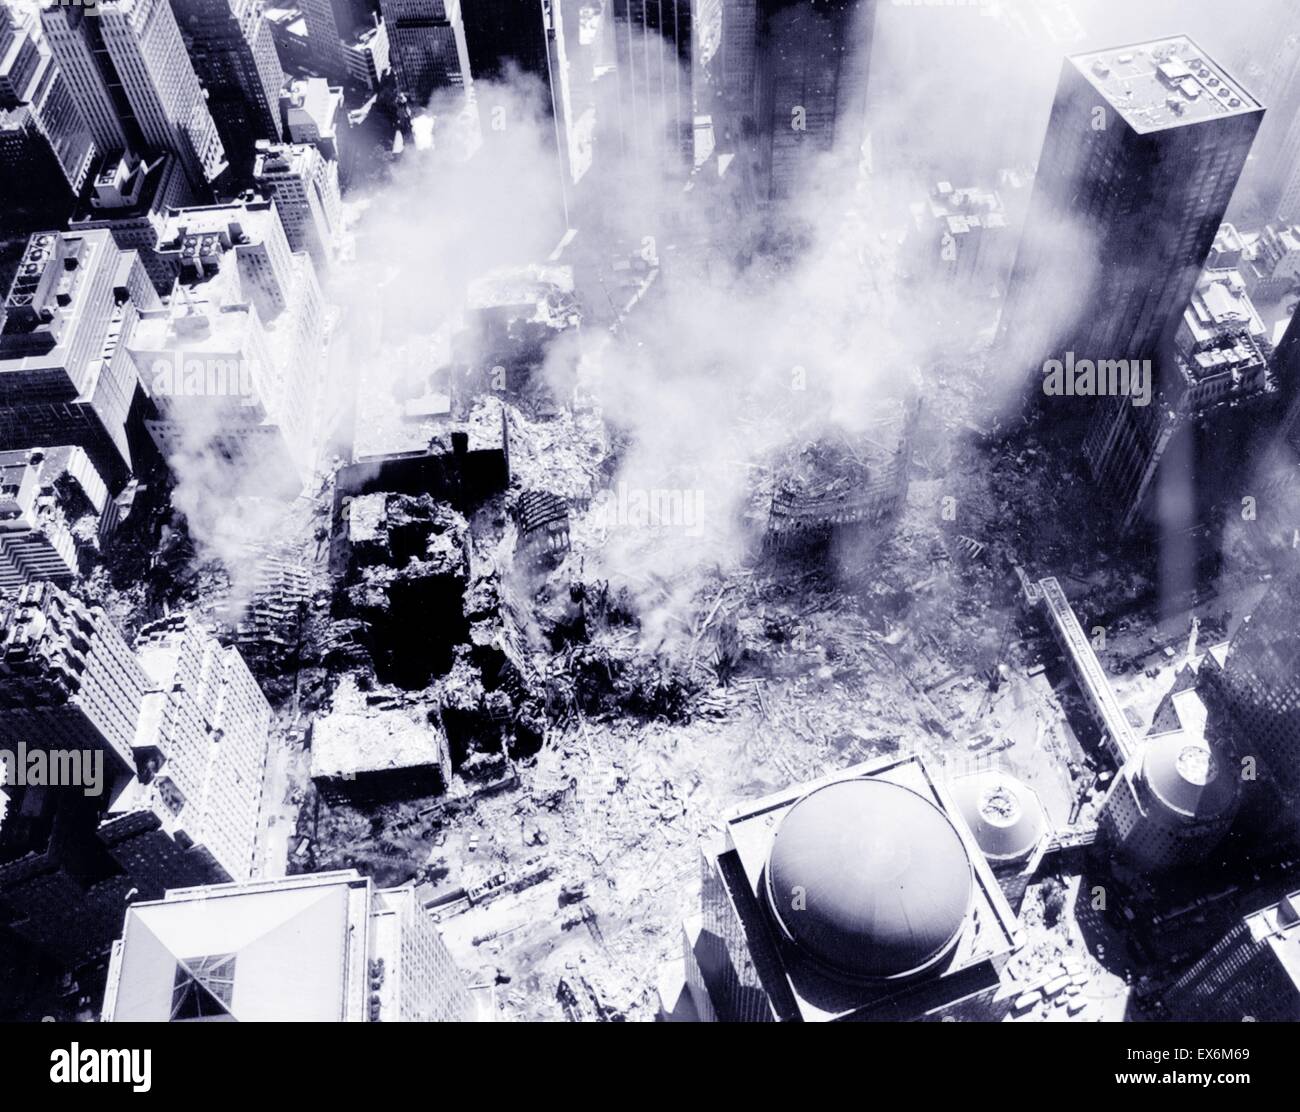 Fotografía de una vista aérea, después de los atentados del 11 de septiembre en el World Trade Center en Nueva York. Fecha 2001 Foto de stock